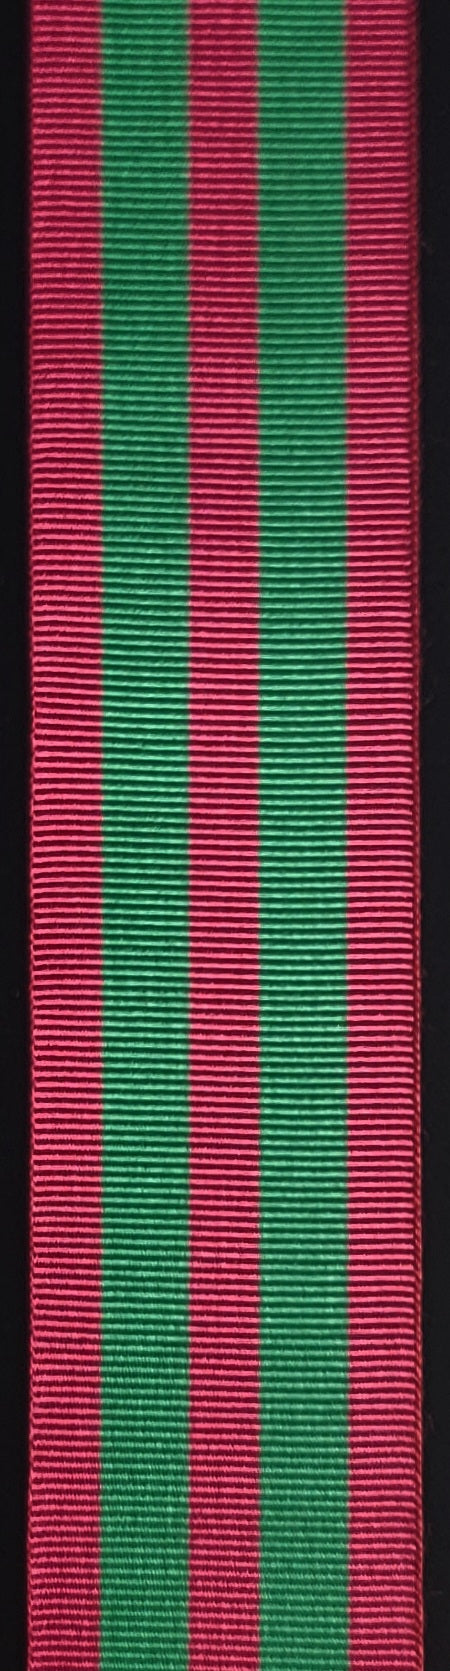 Ribbon, Cadet Lord Strathcona Medal (LSM)